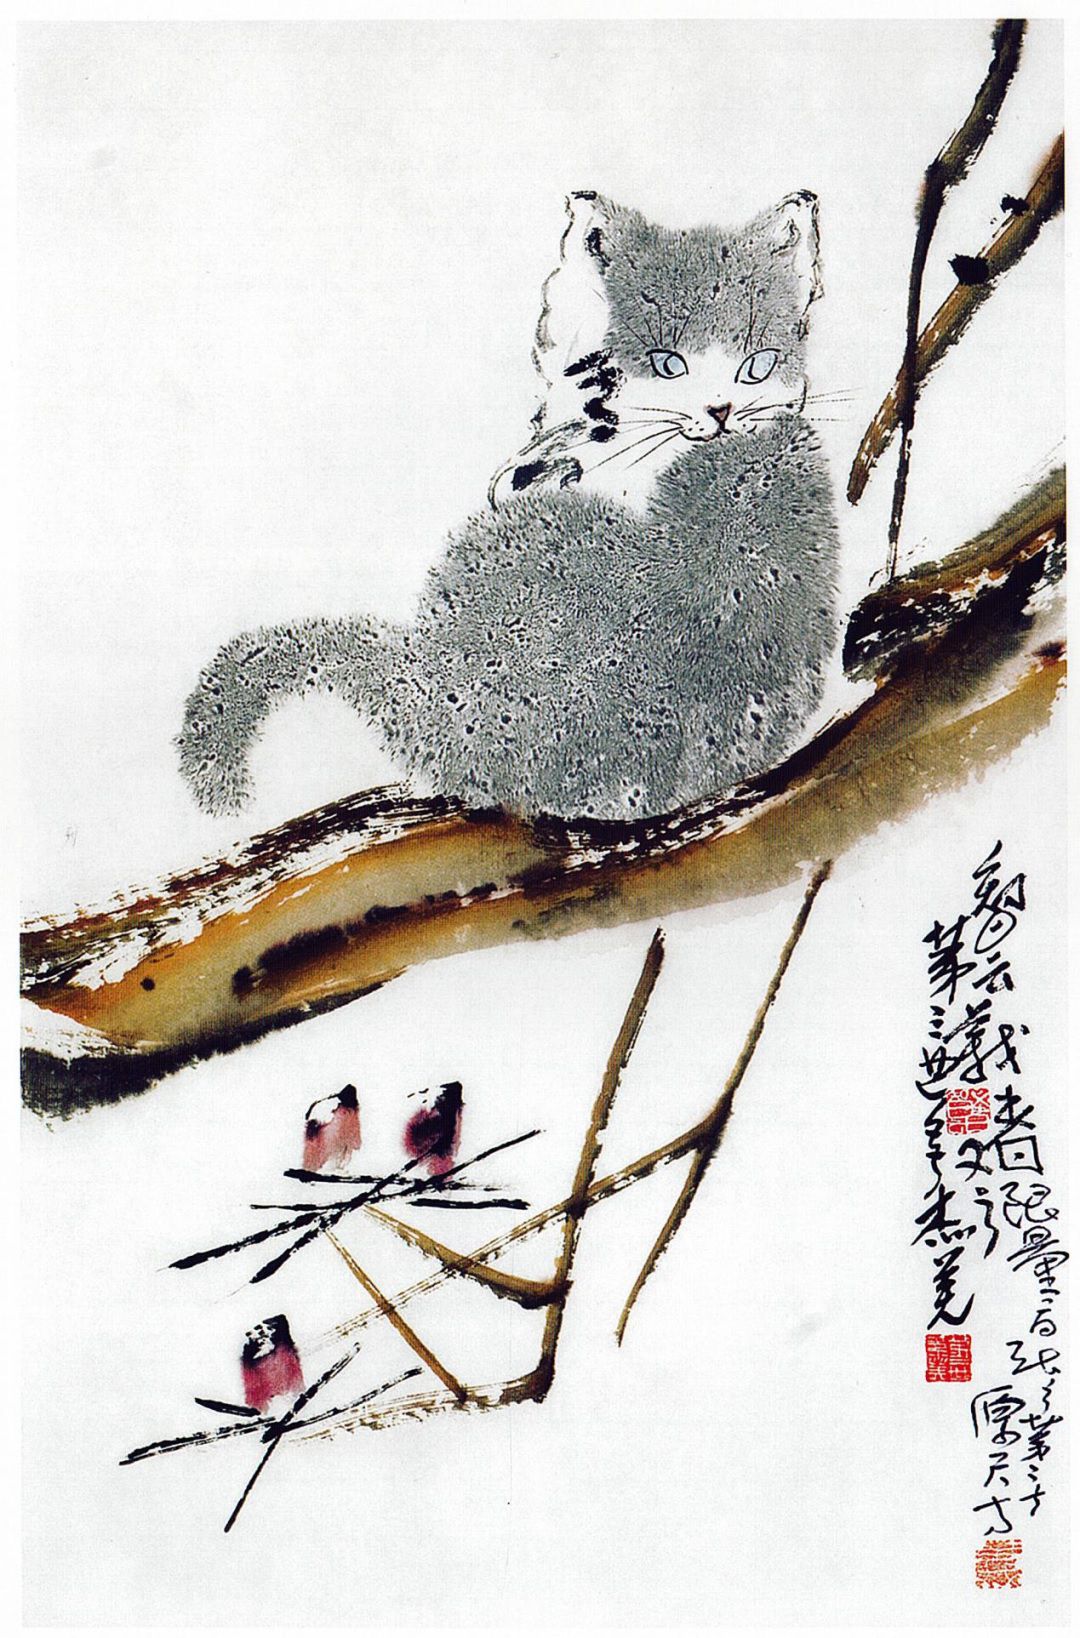 這只毛絨絨、有質感的靈貓 是用什麼手法畫出來的呢？(行雲流水)